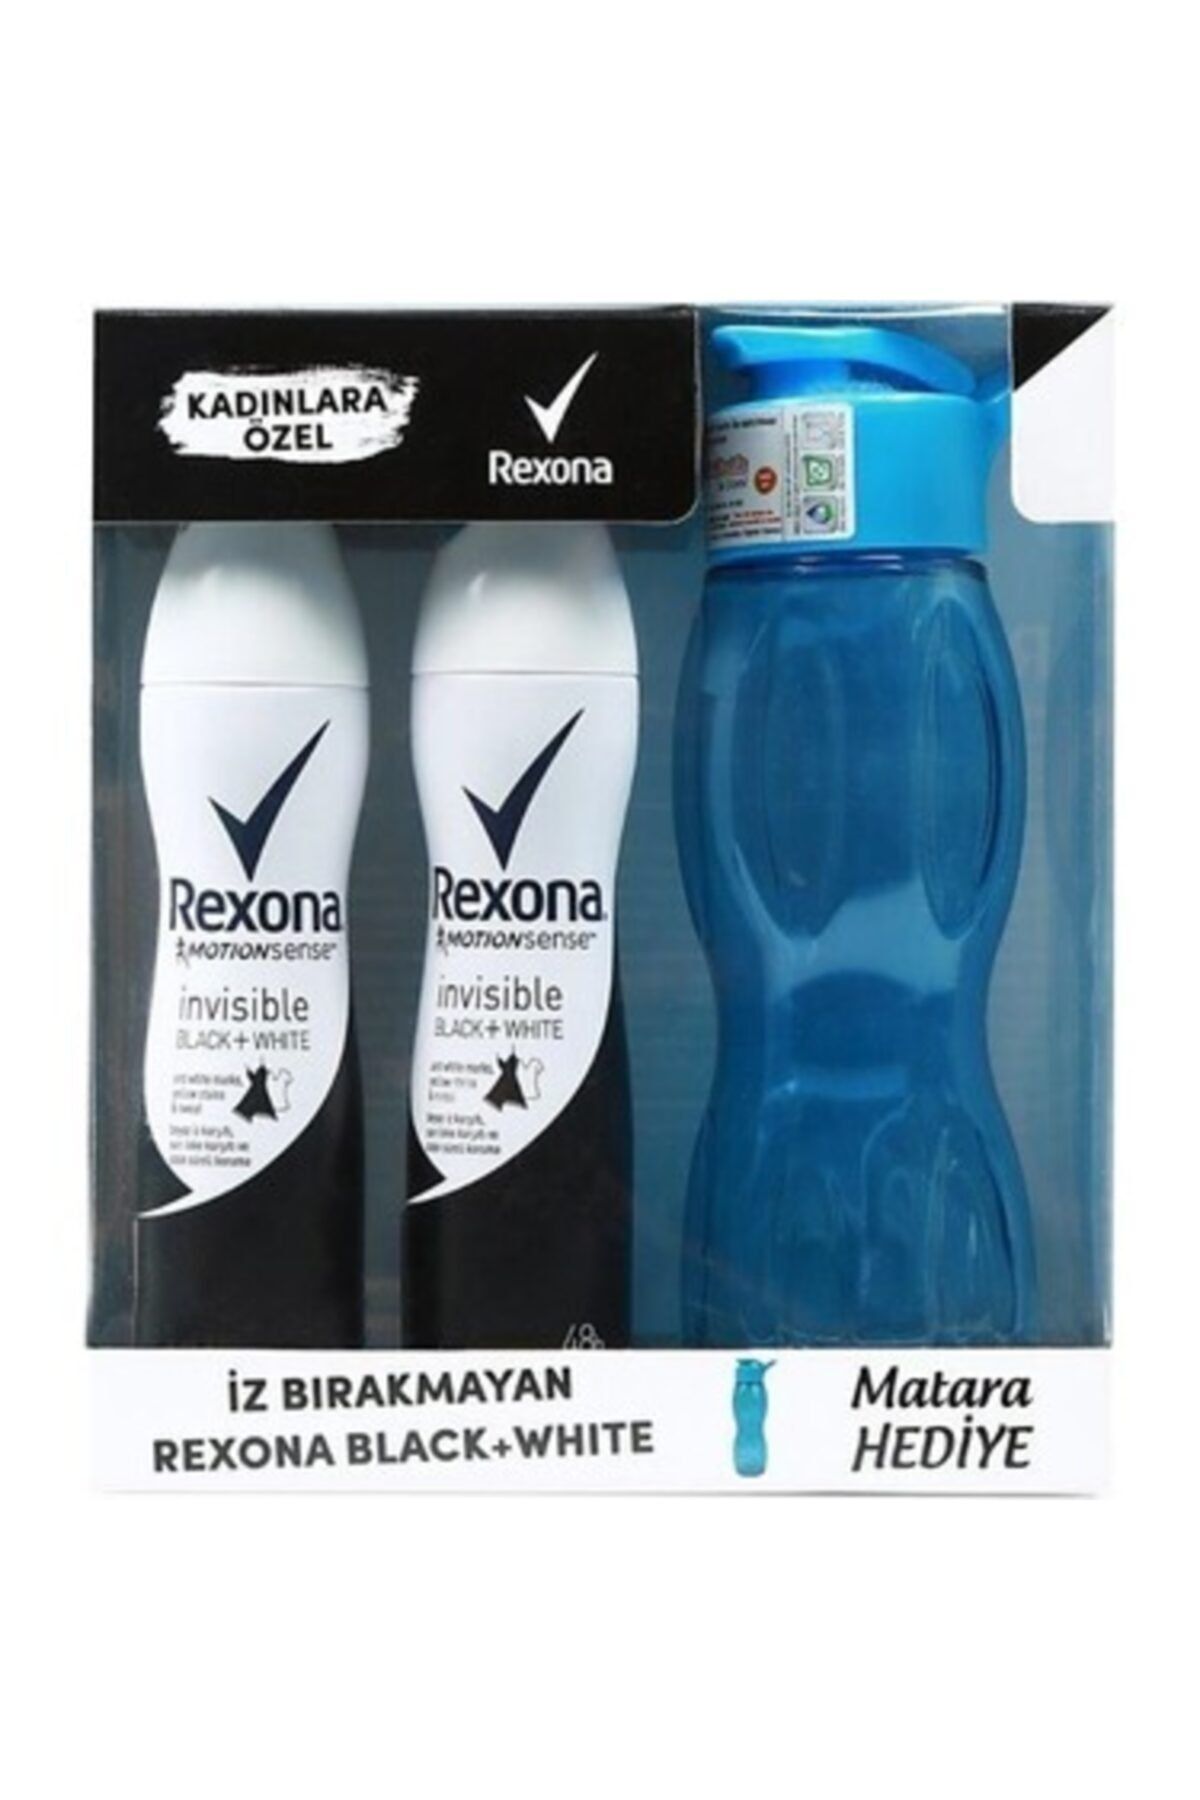 Rexona Kadın Deodorant Invisible Black & White 2 X 150 ml + Su Matarası Hediyeli